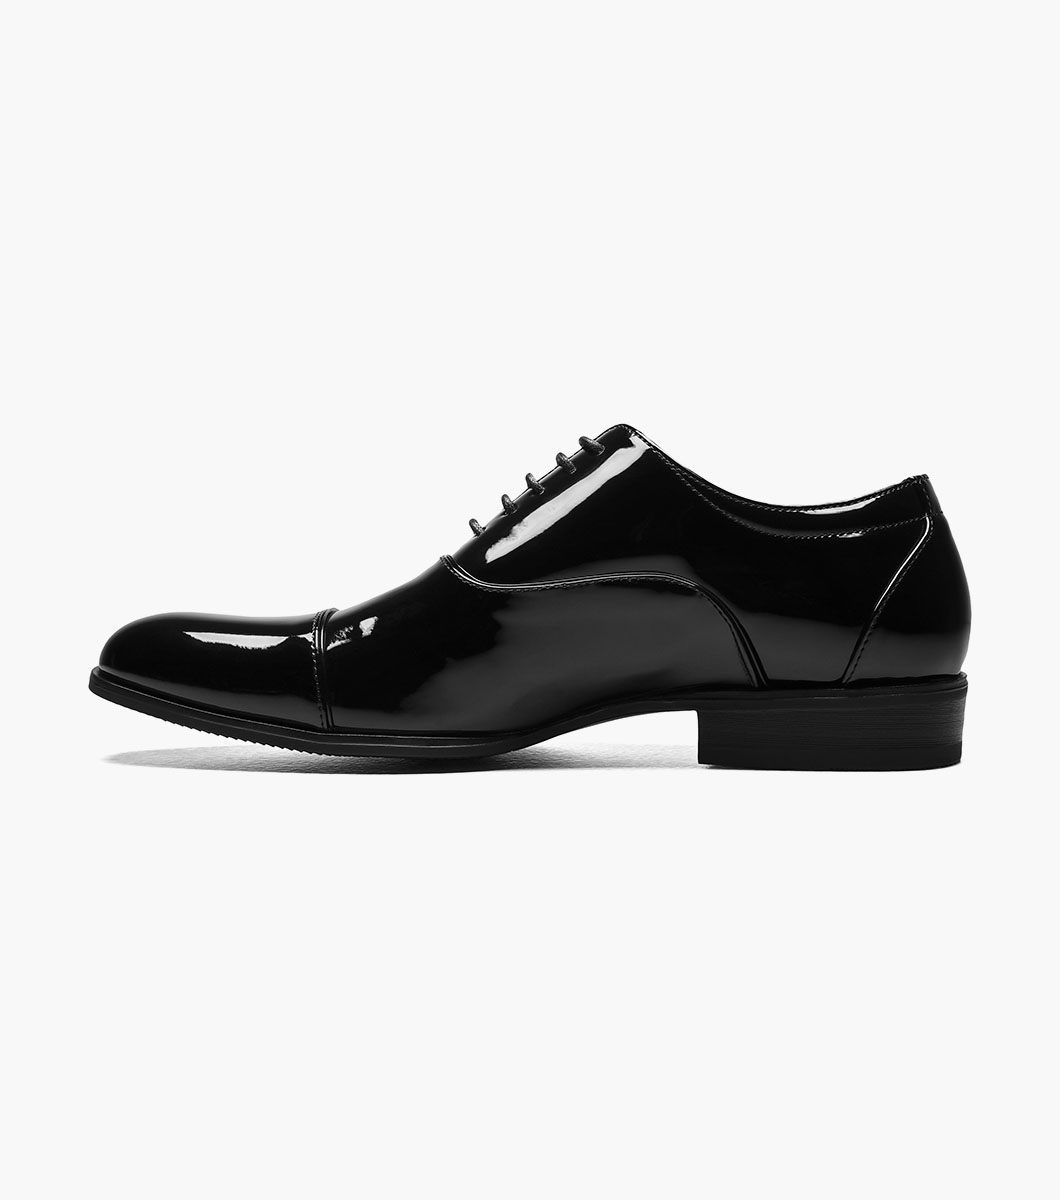 Gala Cap Toe Oxford All Mens Shoes | Stacyadams.com